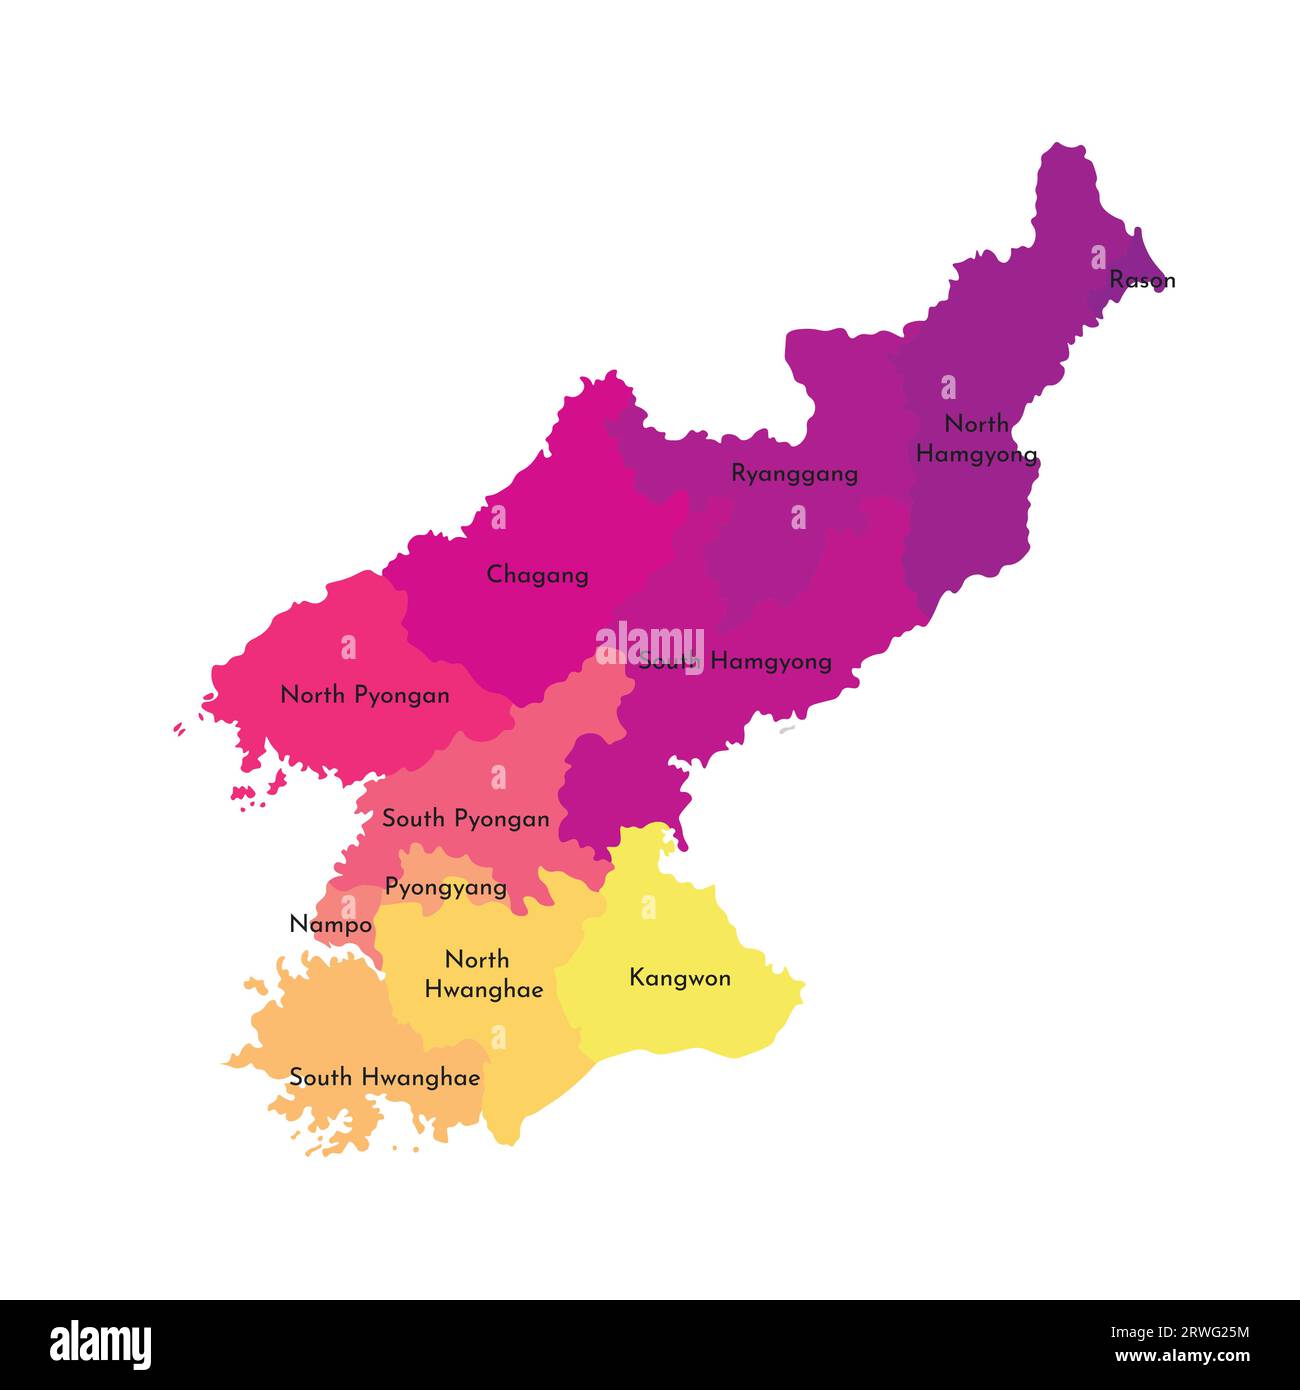 Vektorisolierte Darstellung einer vereinfachten Verwaltungskarte Nordkoreas (Volksrepublik Korea). Grenzen und Namen der Regionen. Multi-Col Stock Vektor